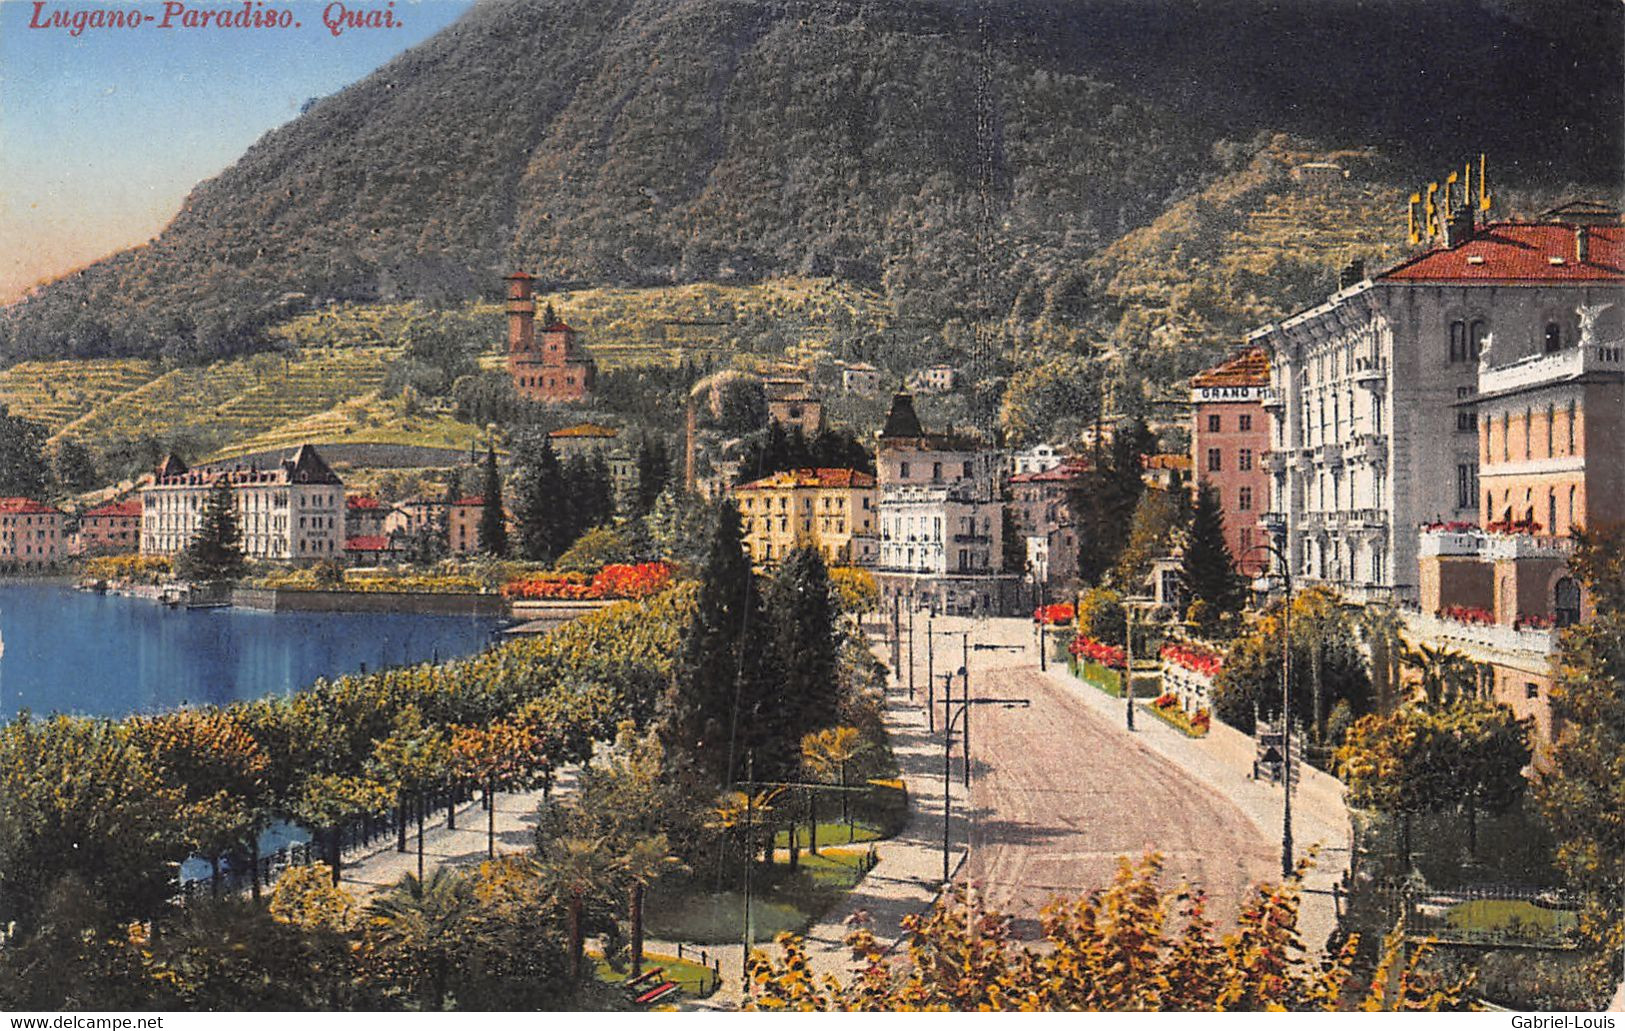 Lugano Paradiso Quai - Paradiso